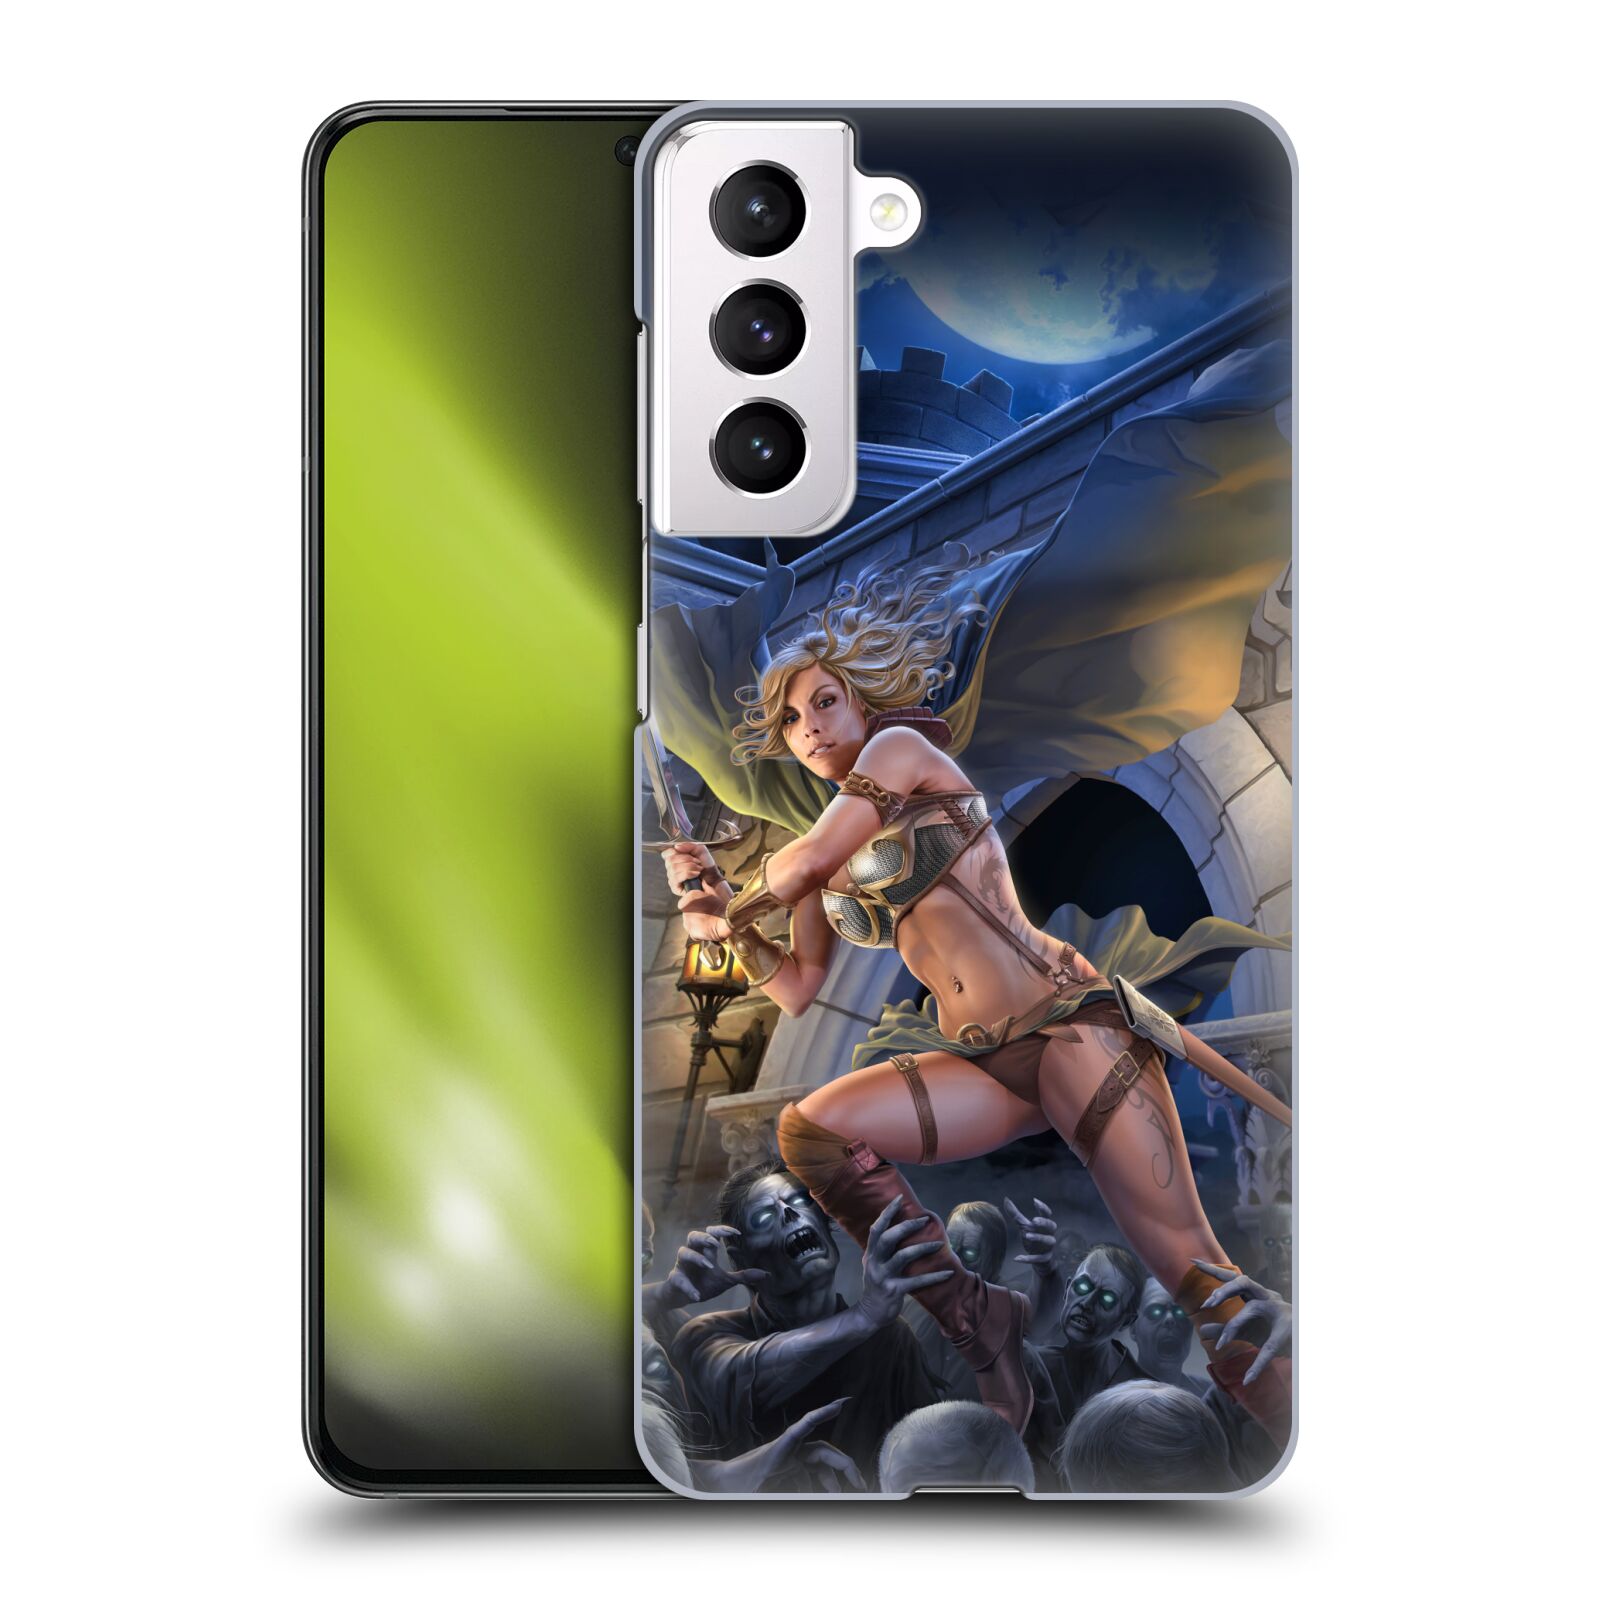 Pouzdro na mobil Samsung Galaxy S21 5G - HEAD CASE - Fantasy kresby Tom Wood - Princezna bojovnice a zombies